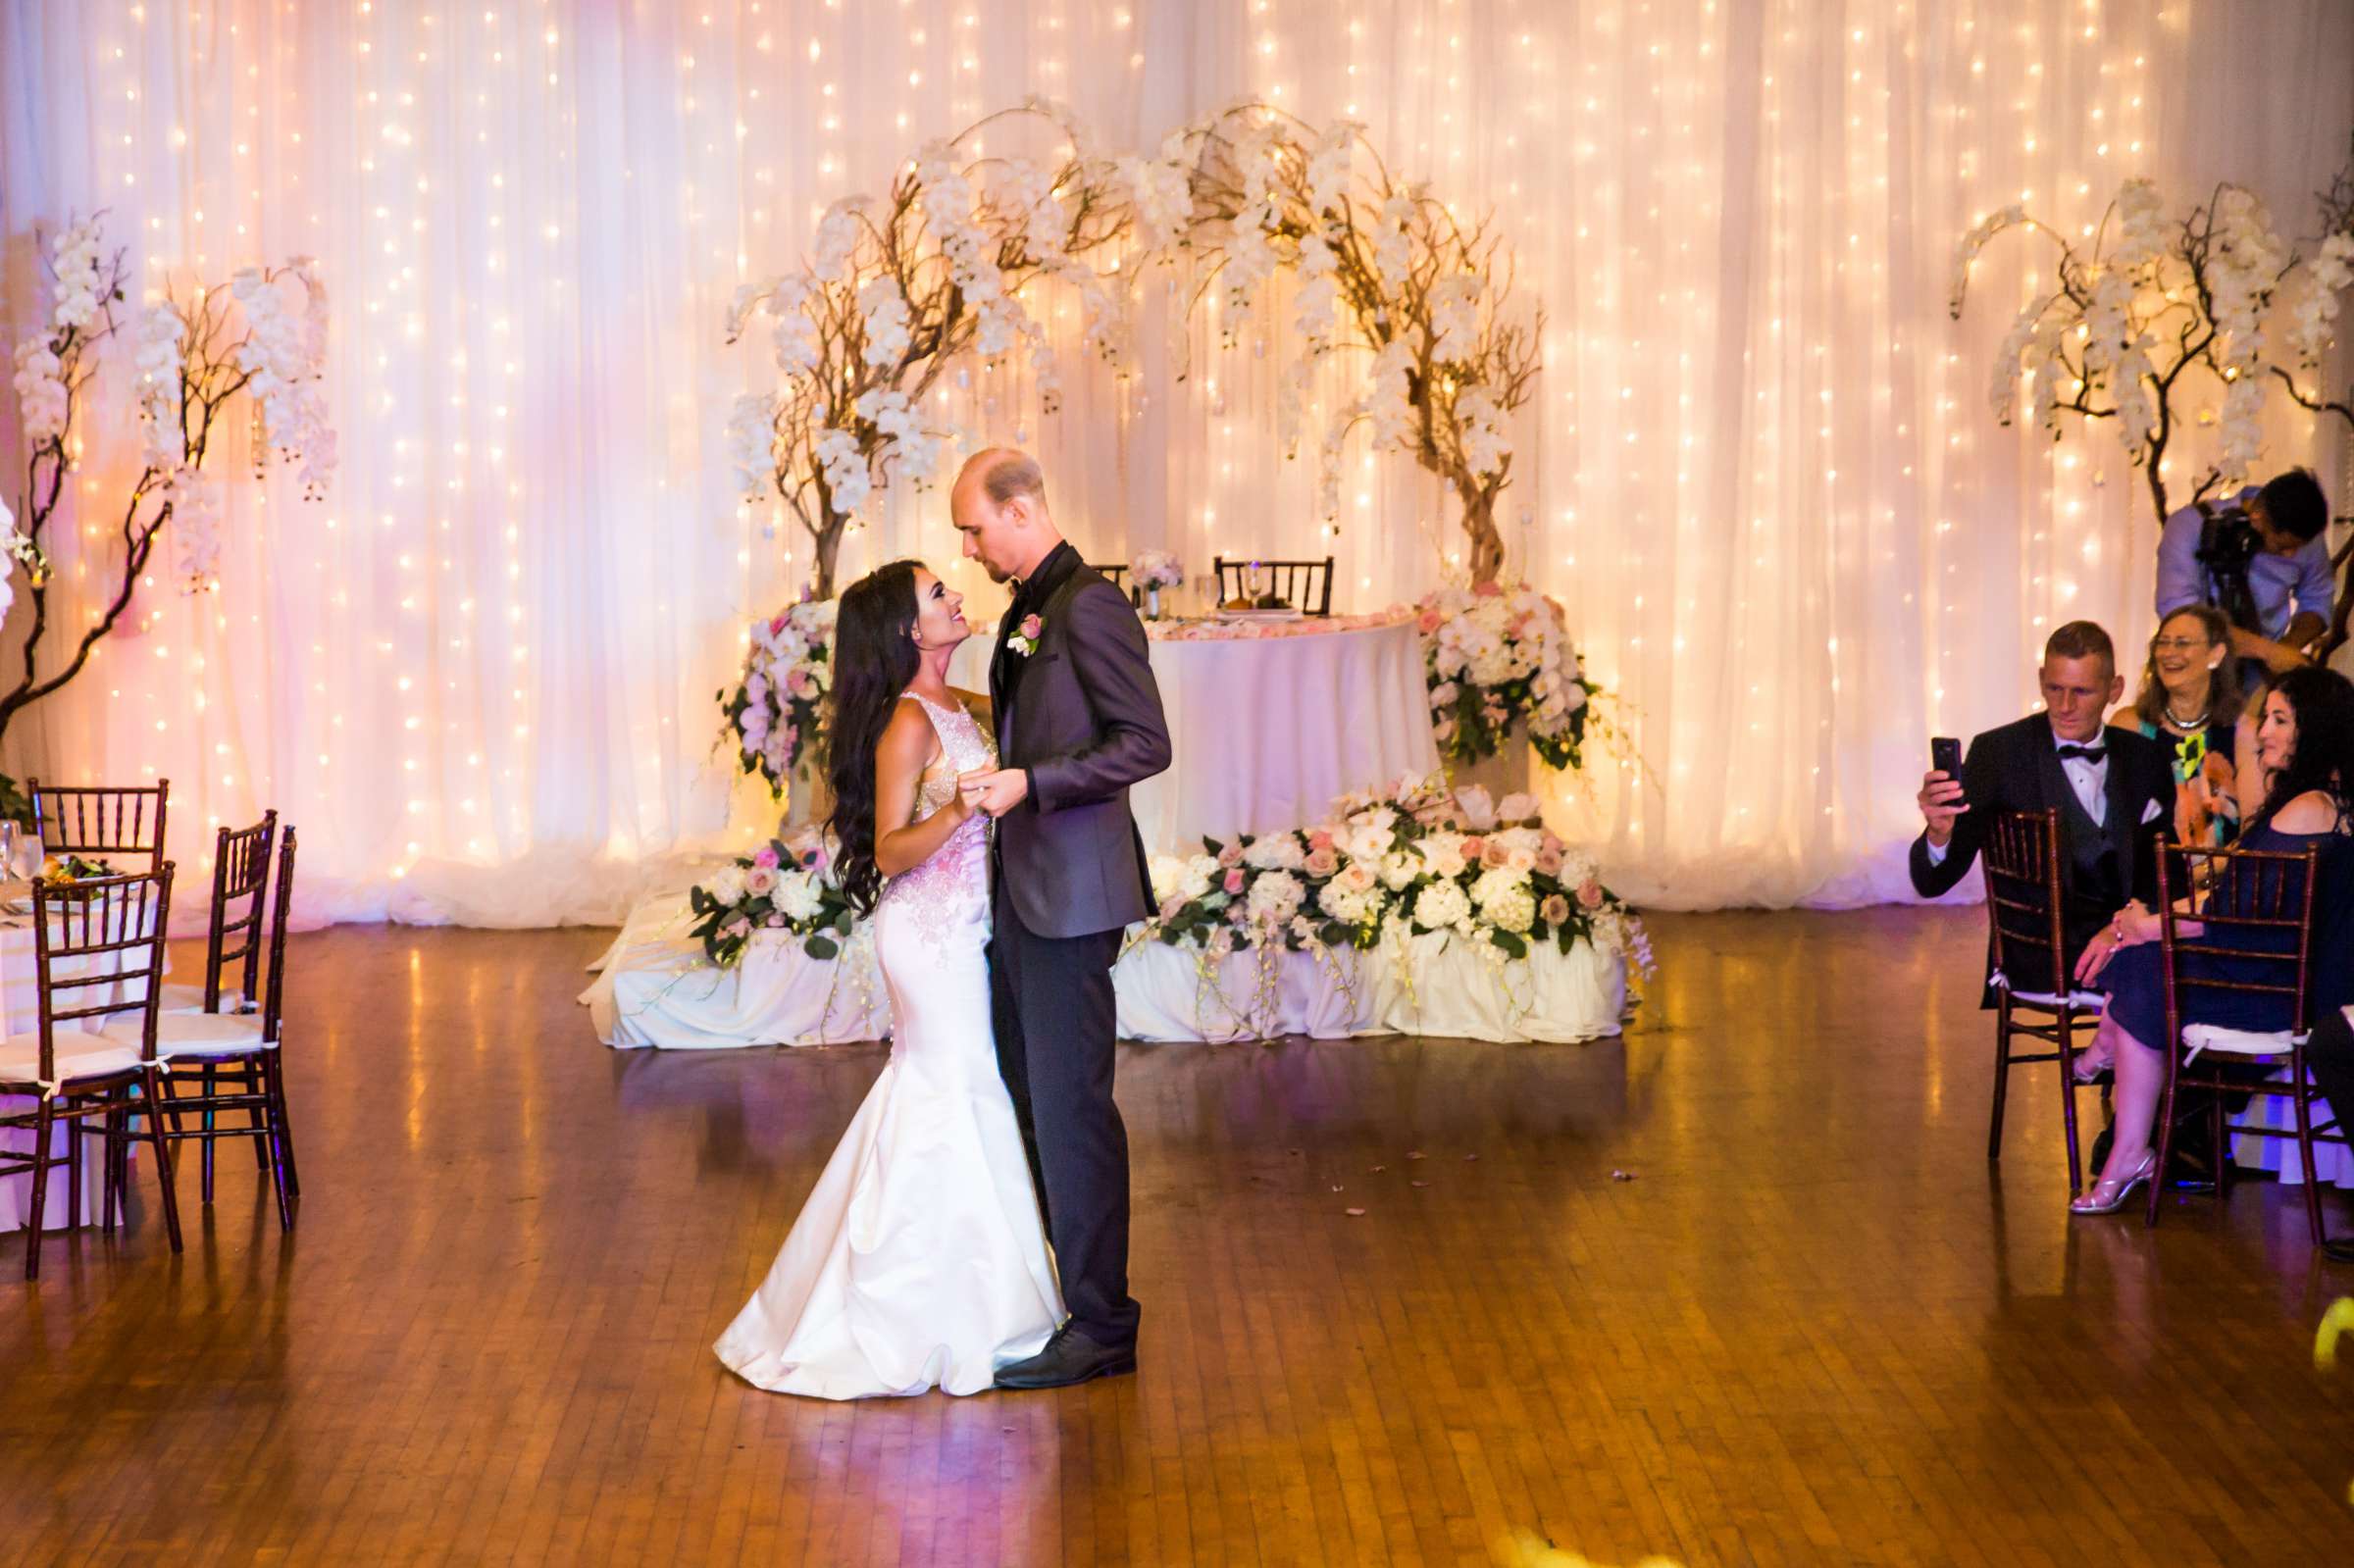 Cuvier Club Wedding, Lulu and Josh Wedding Photo #123 by True Photography